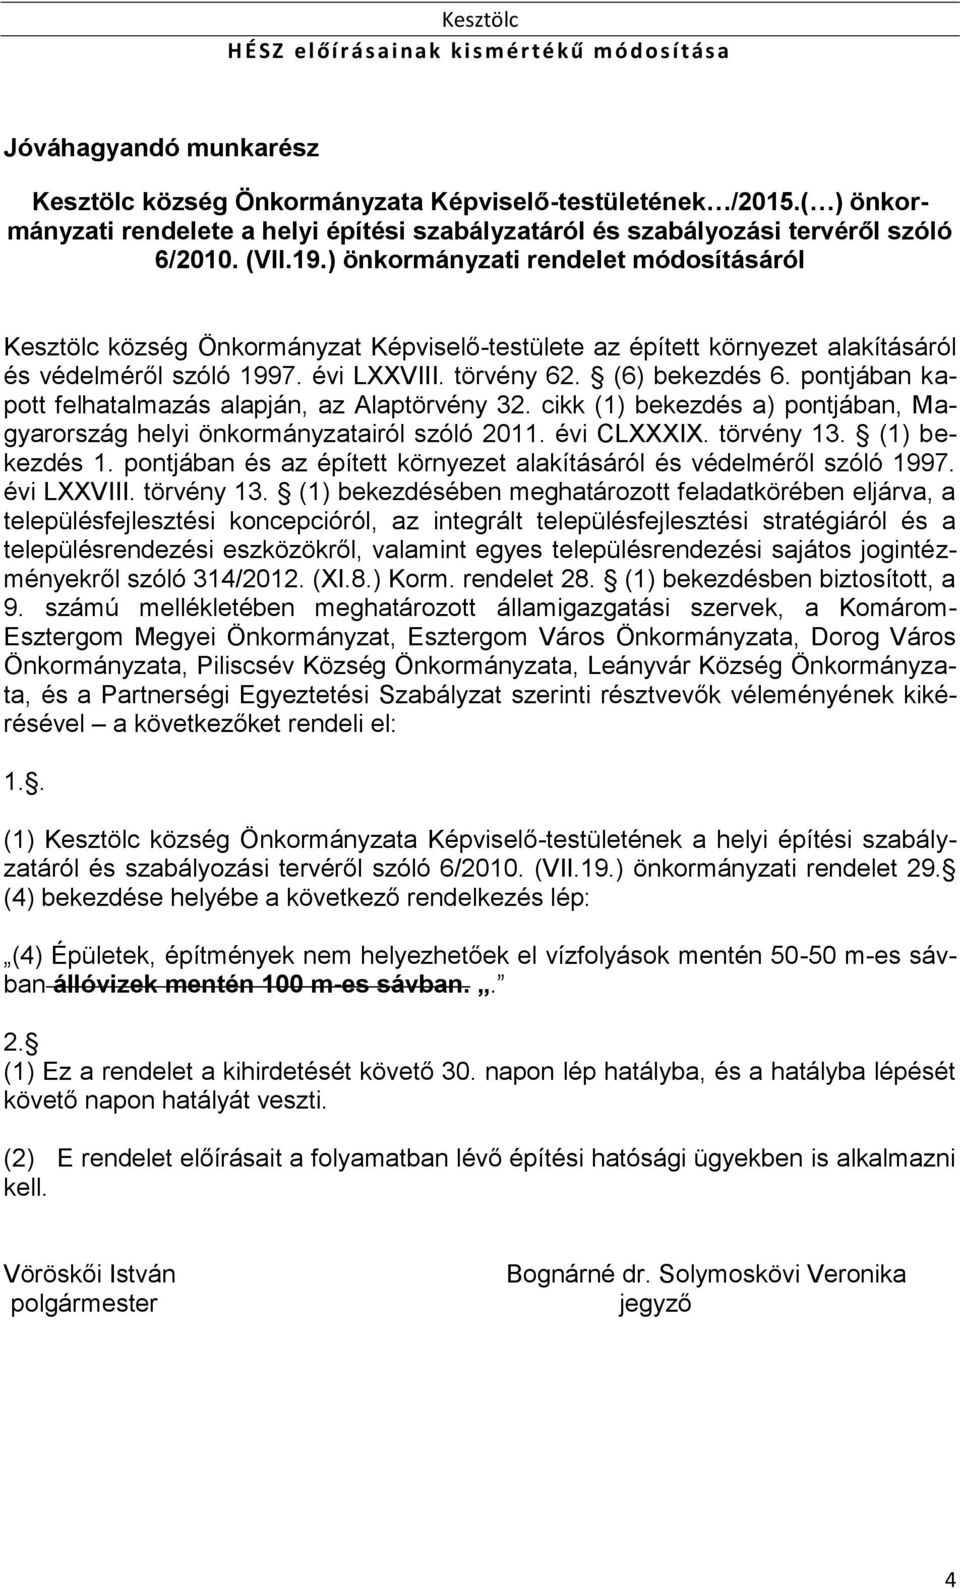 pontjában kapott felhatalmazás alapján, az Alaptörvény 32. cikk (1) bekezdés a) pontjában, Magyarország helyi önkormányzatairól szóló 2011. évi CLXXXIX. törvény 13. (1) bekezdés 1.